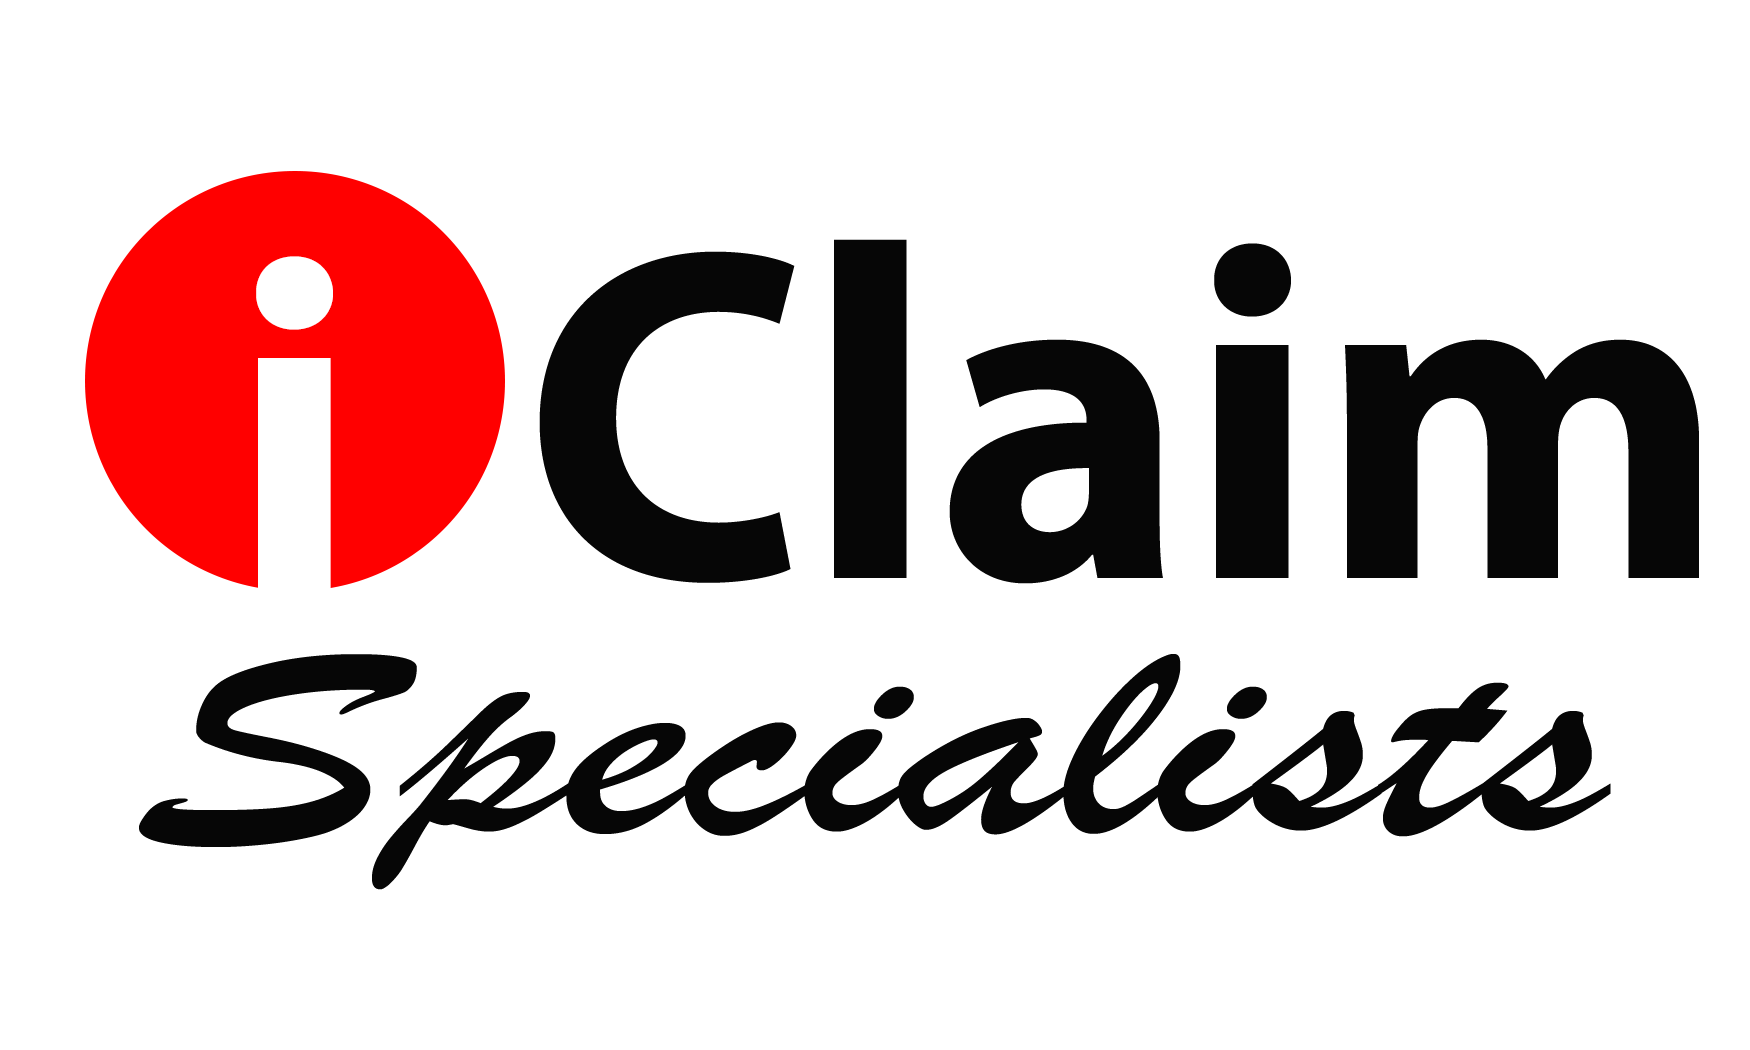 I-Claim Specialists Logo